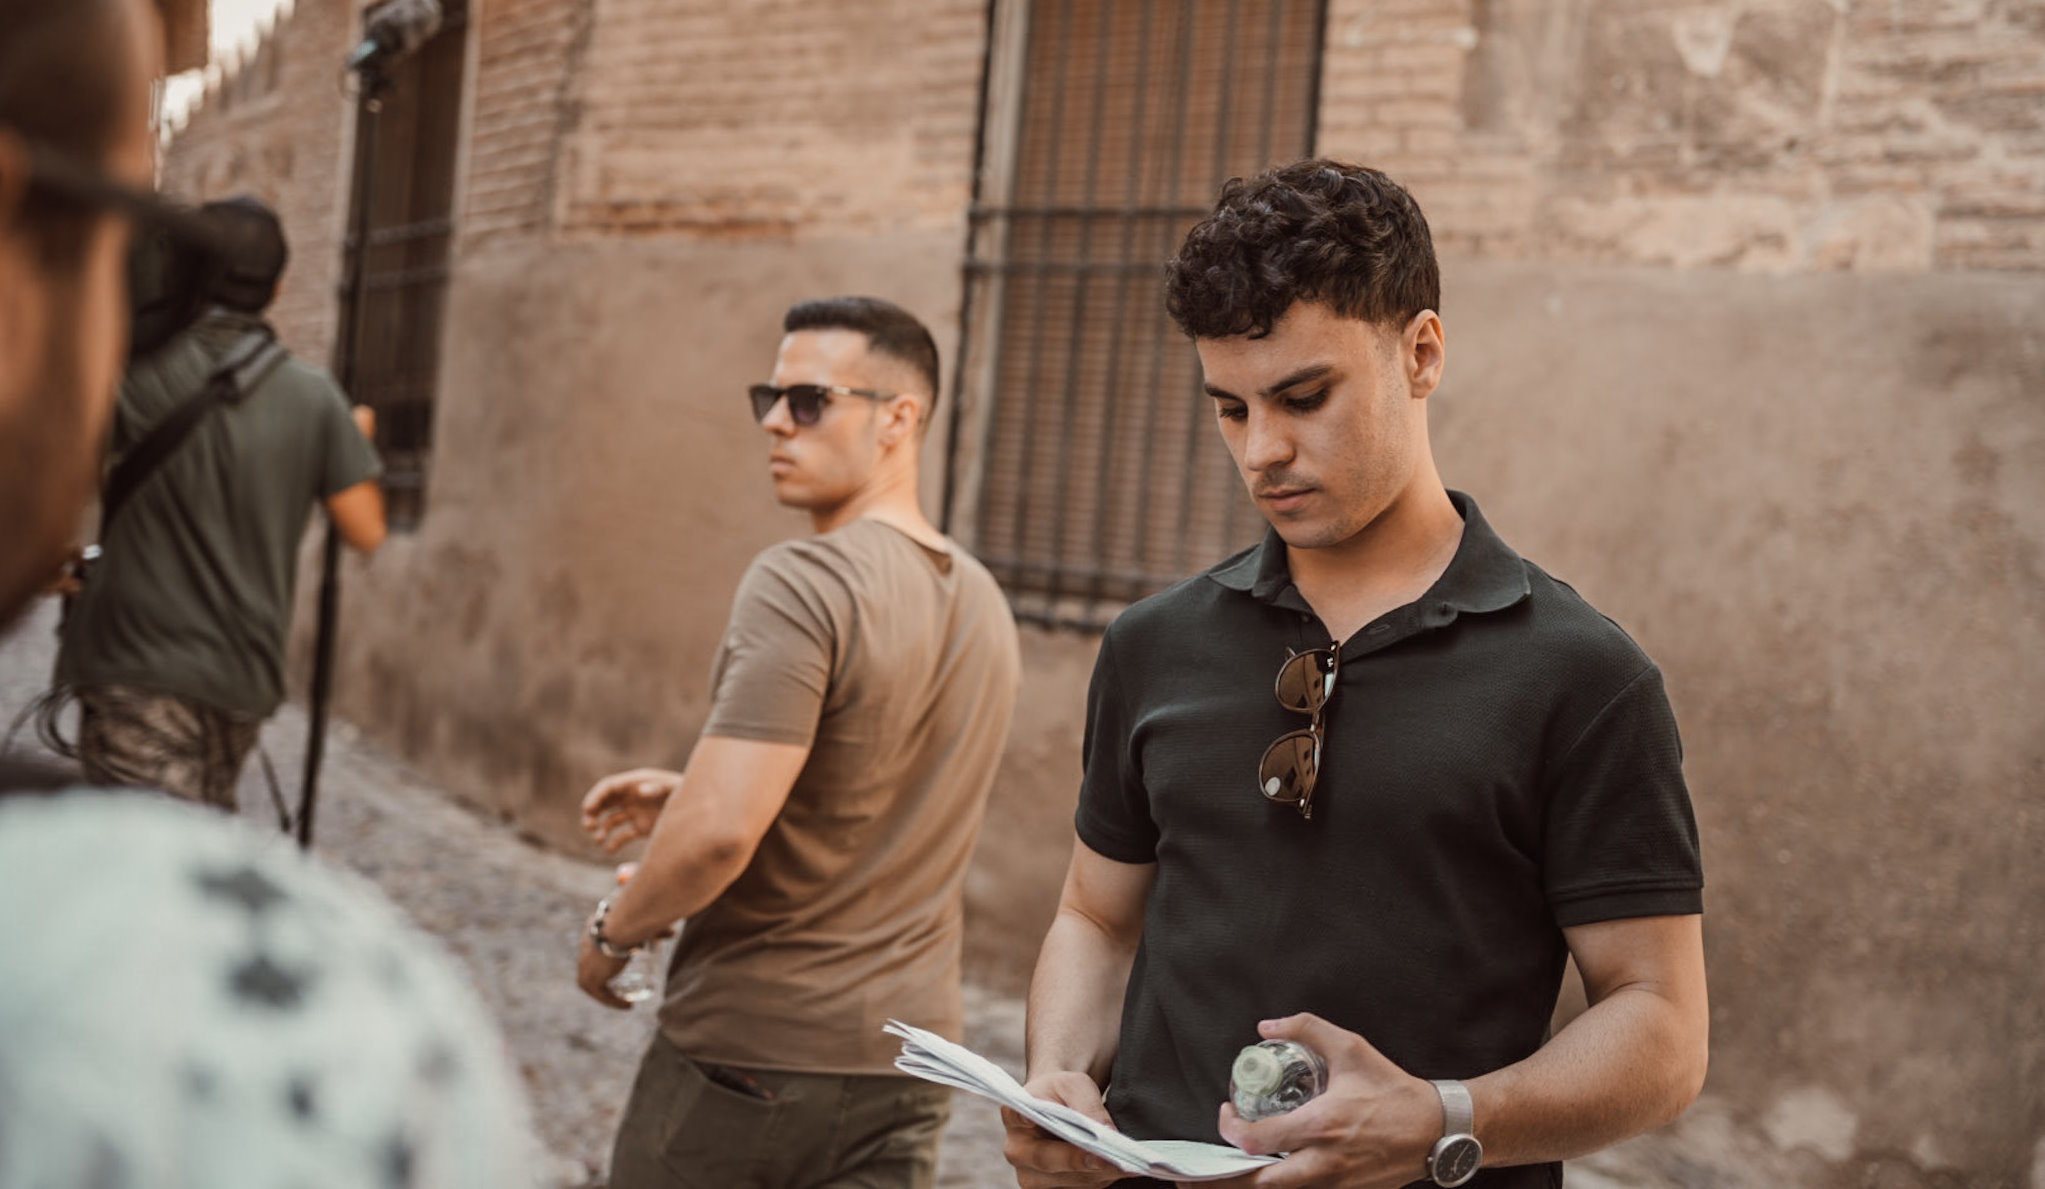 Los hermanos Roberto y Carlos Valle están rodando "Kairós " en Toledo.